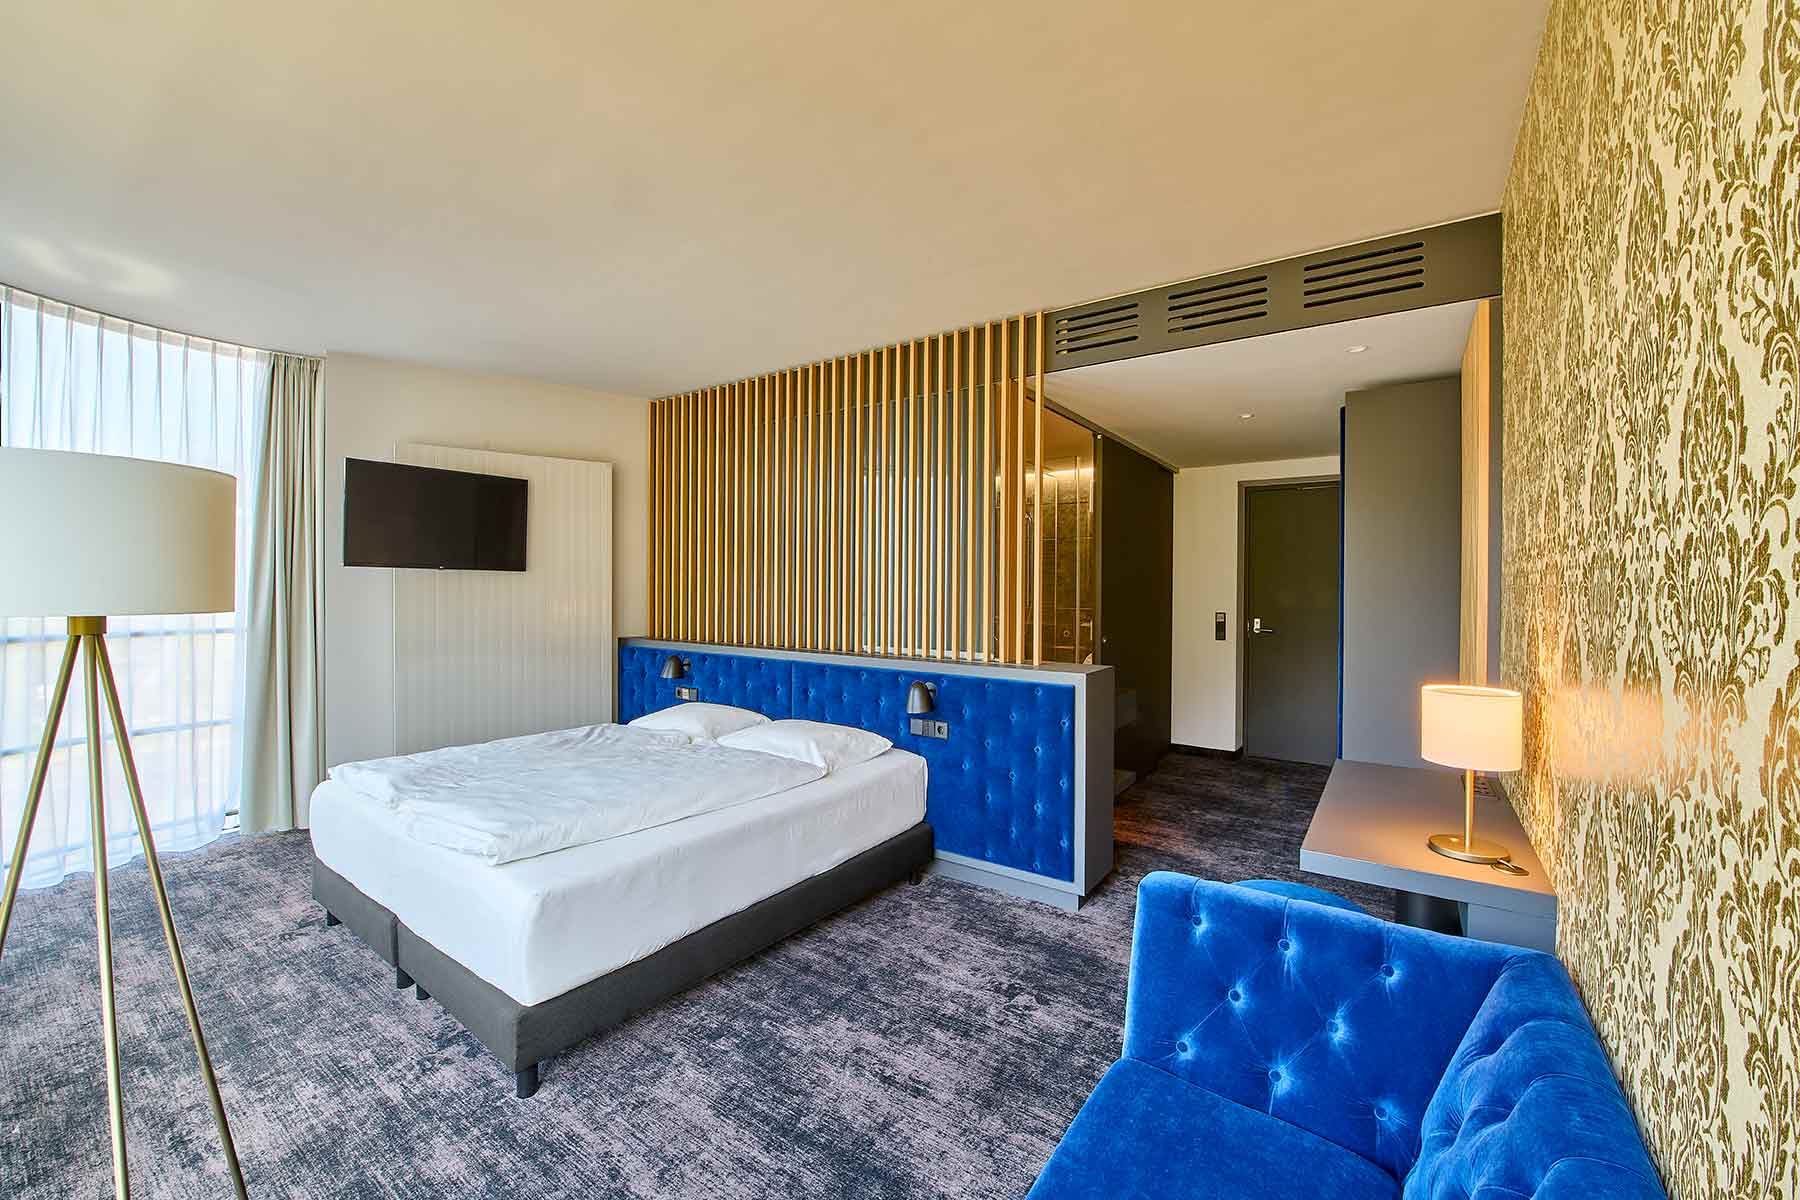 Bad Ems Thermenhotel Zimmer mit royal blauen Polstermöbeln